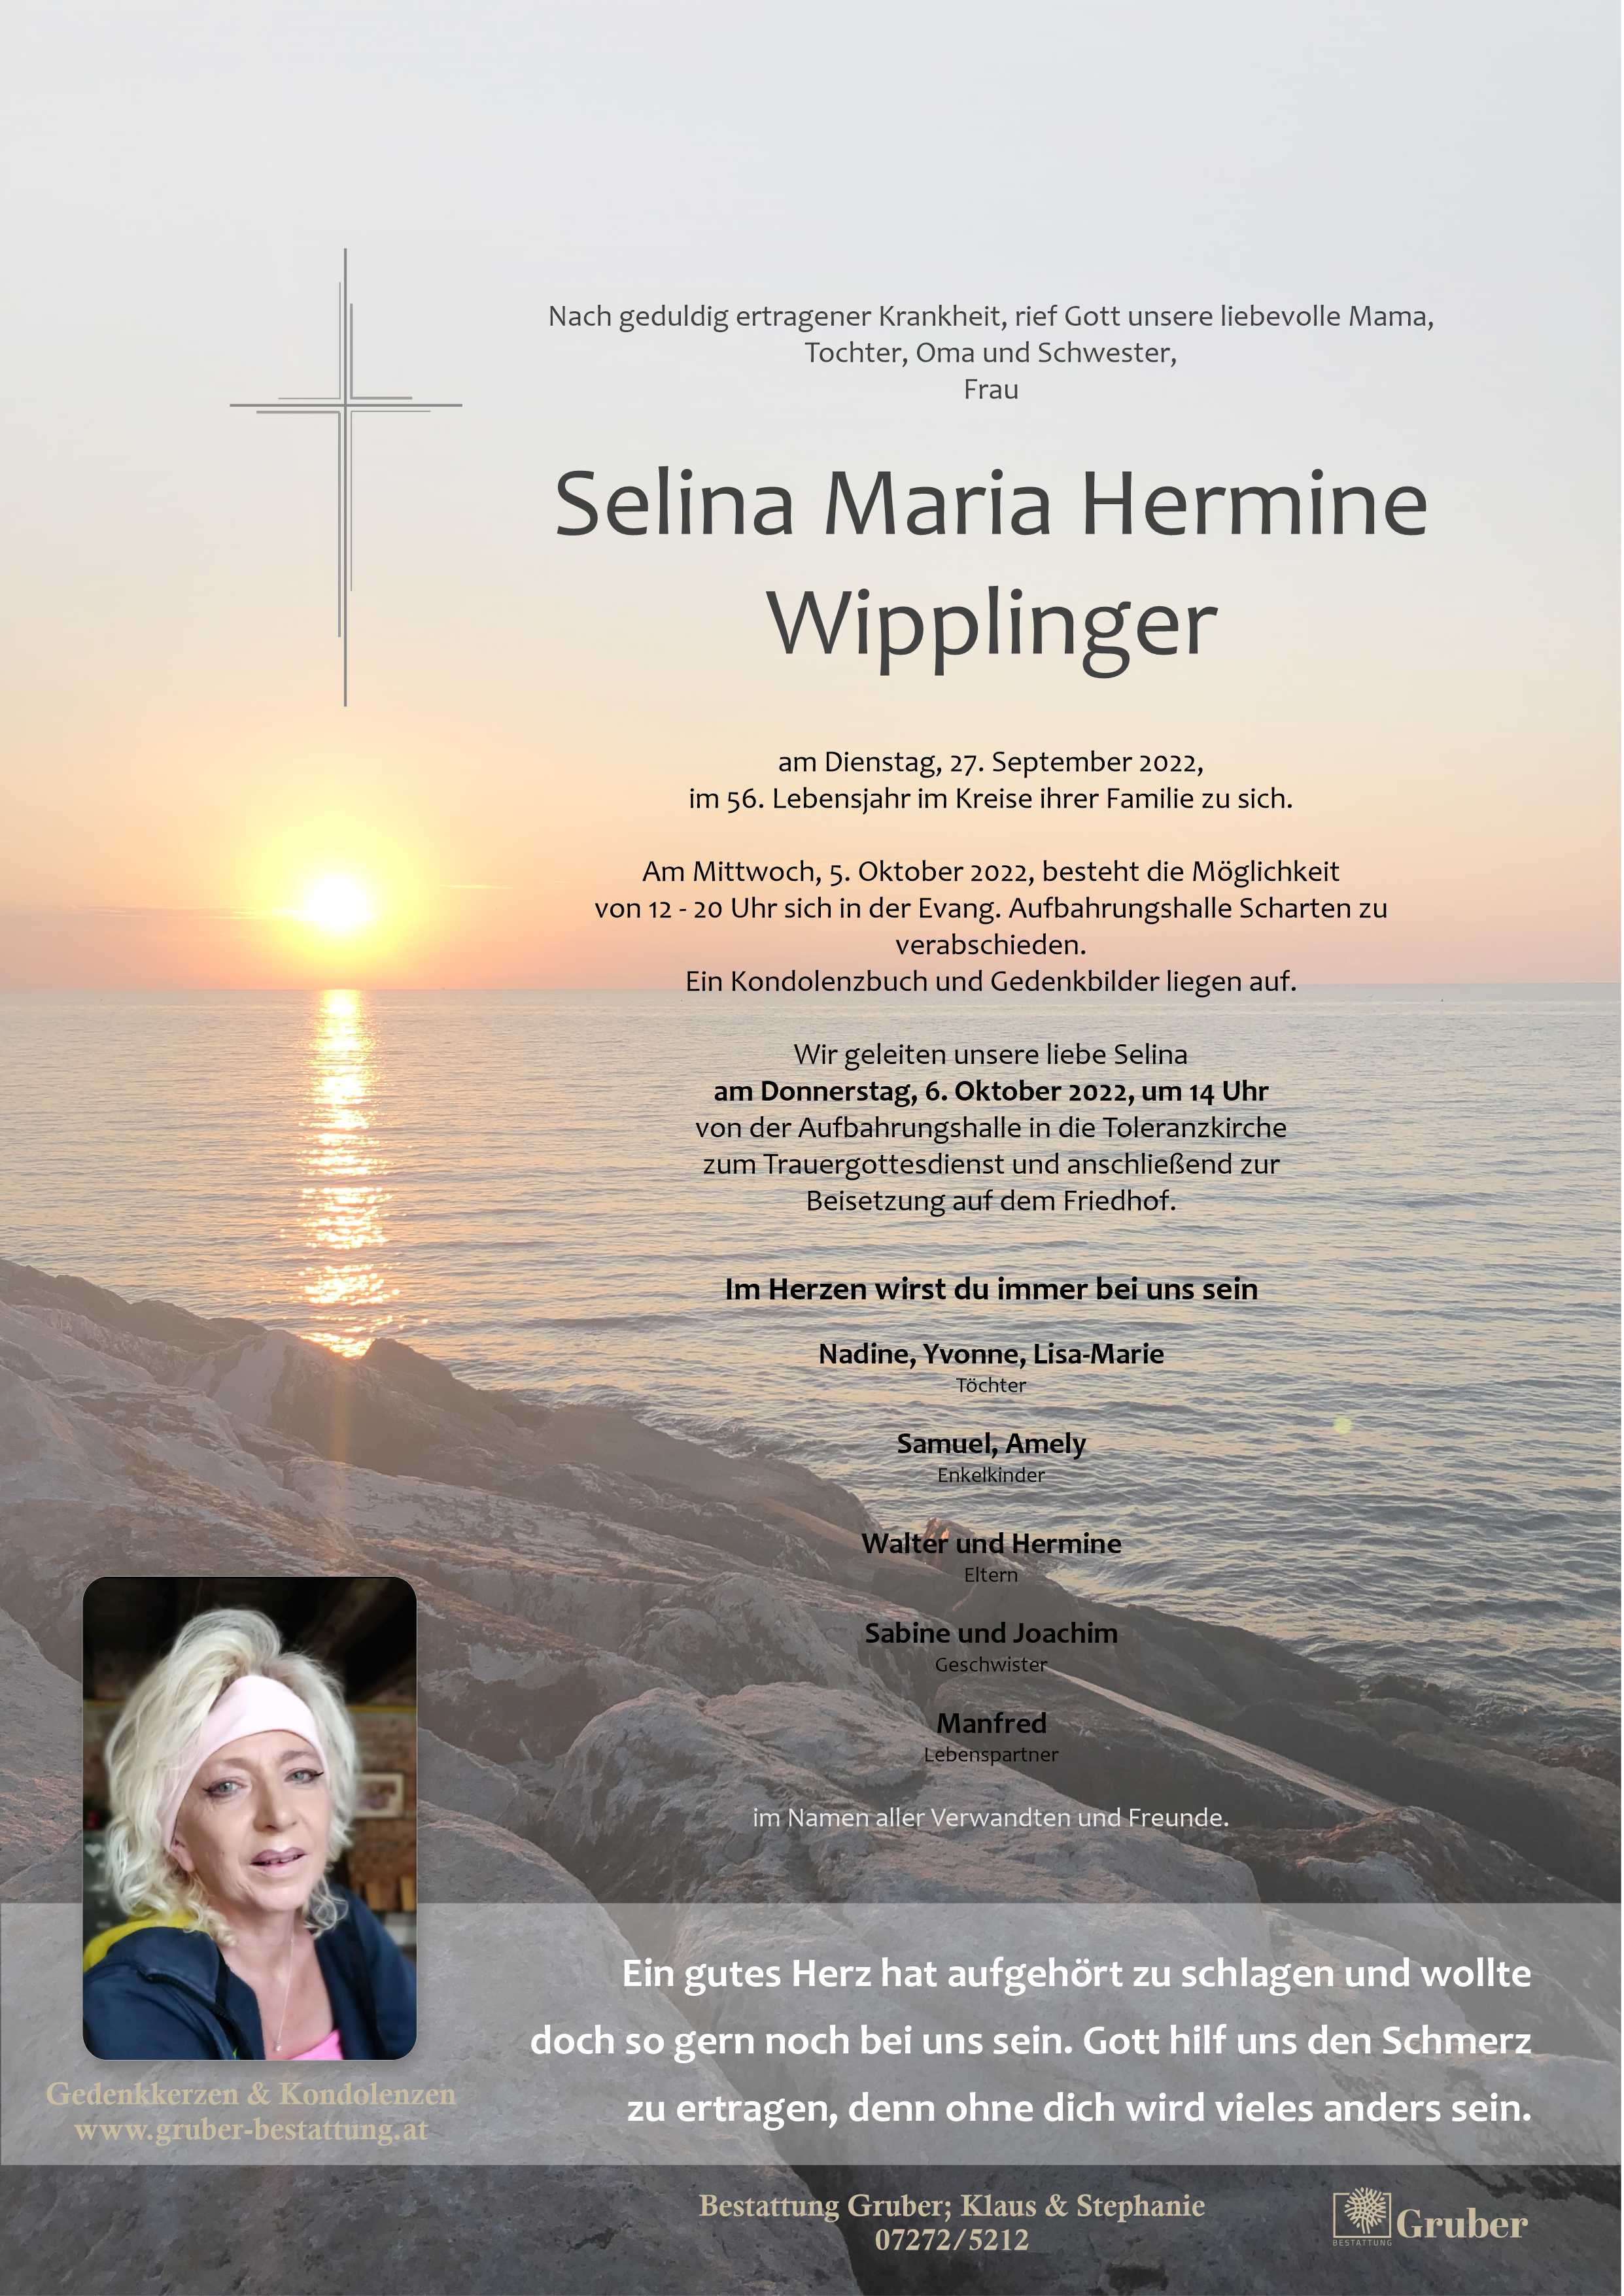 Selina Maria Hermine Wipplinger (Scharten Evang)